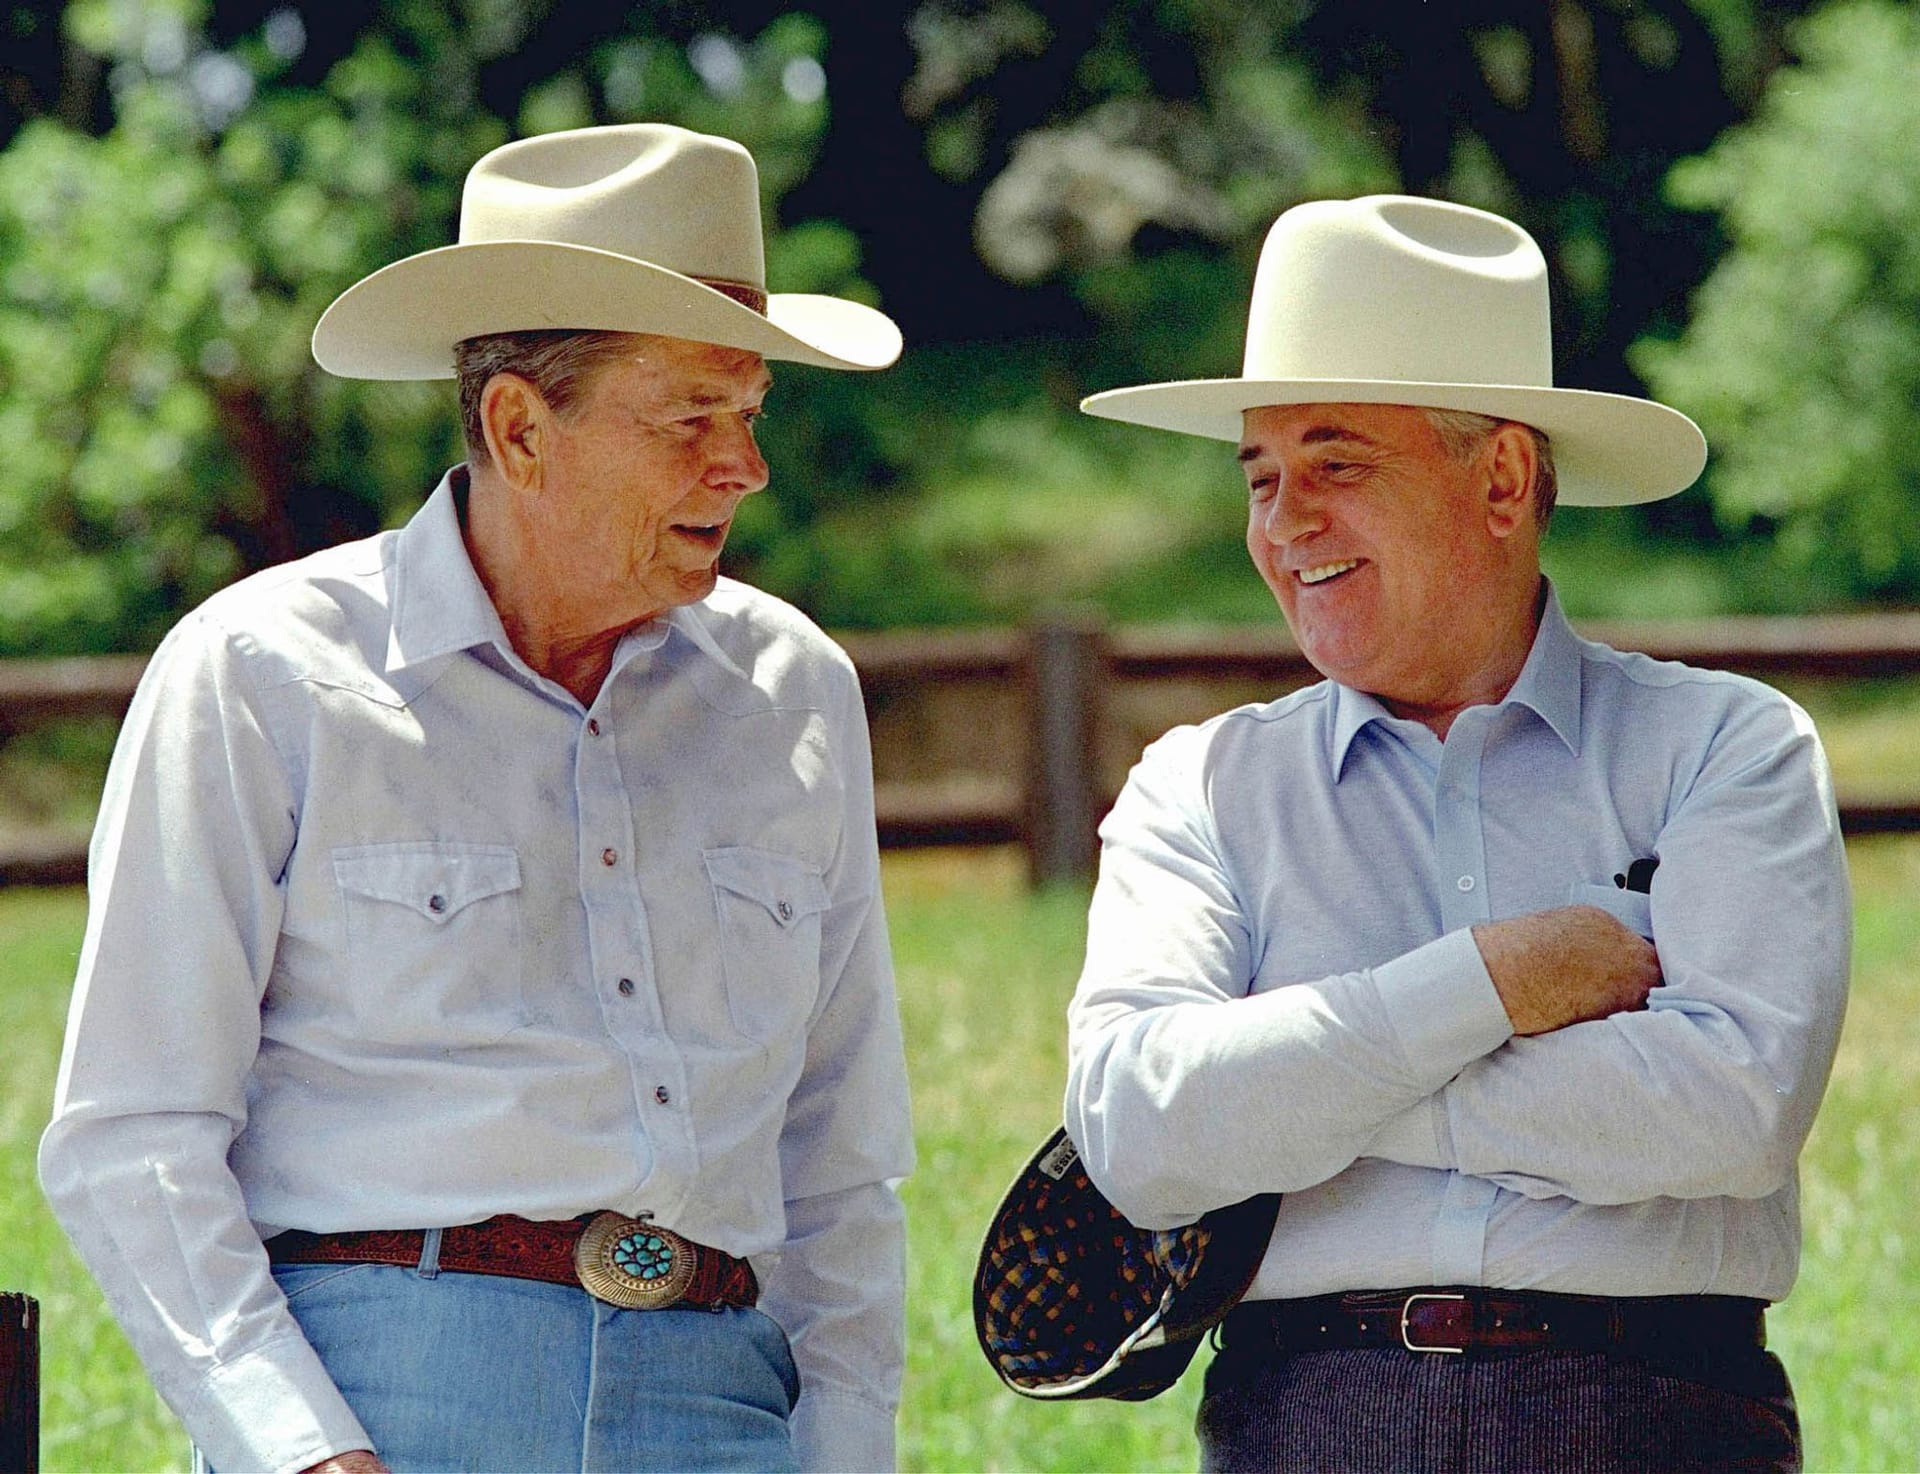 Besuch auf der Ranch 1991: Der ehemalige US-Präsident Ronald Reagan (l.) und der ehemalige sowjetische Präsident Michail Gorbatschow tragen Cowboyhüte